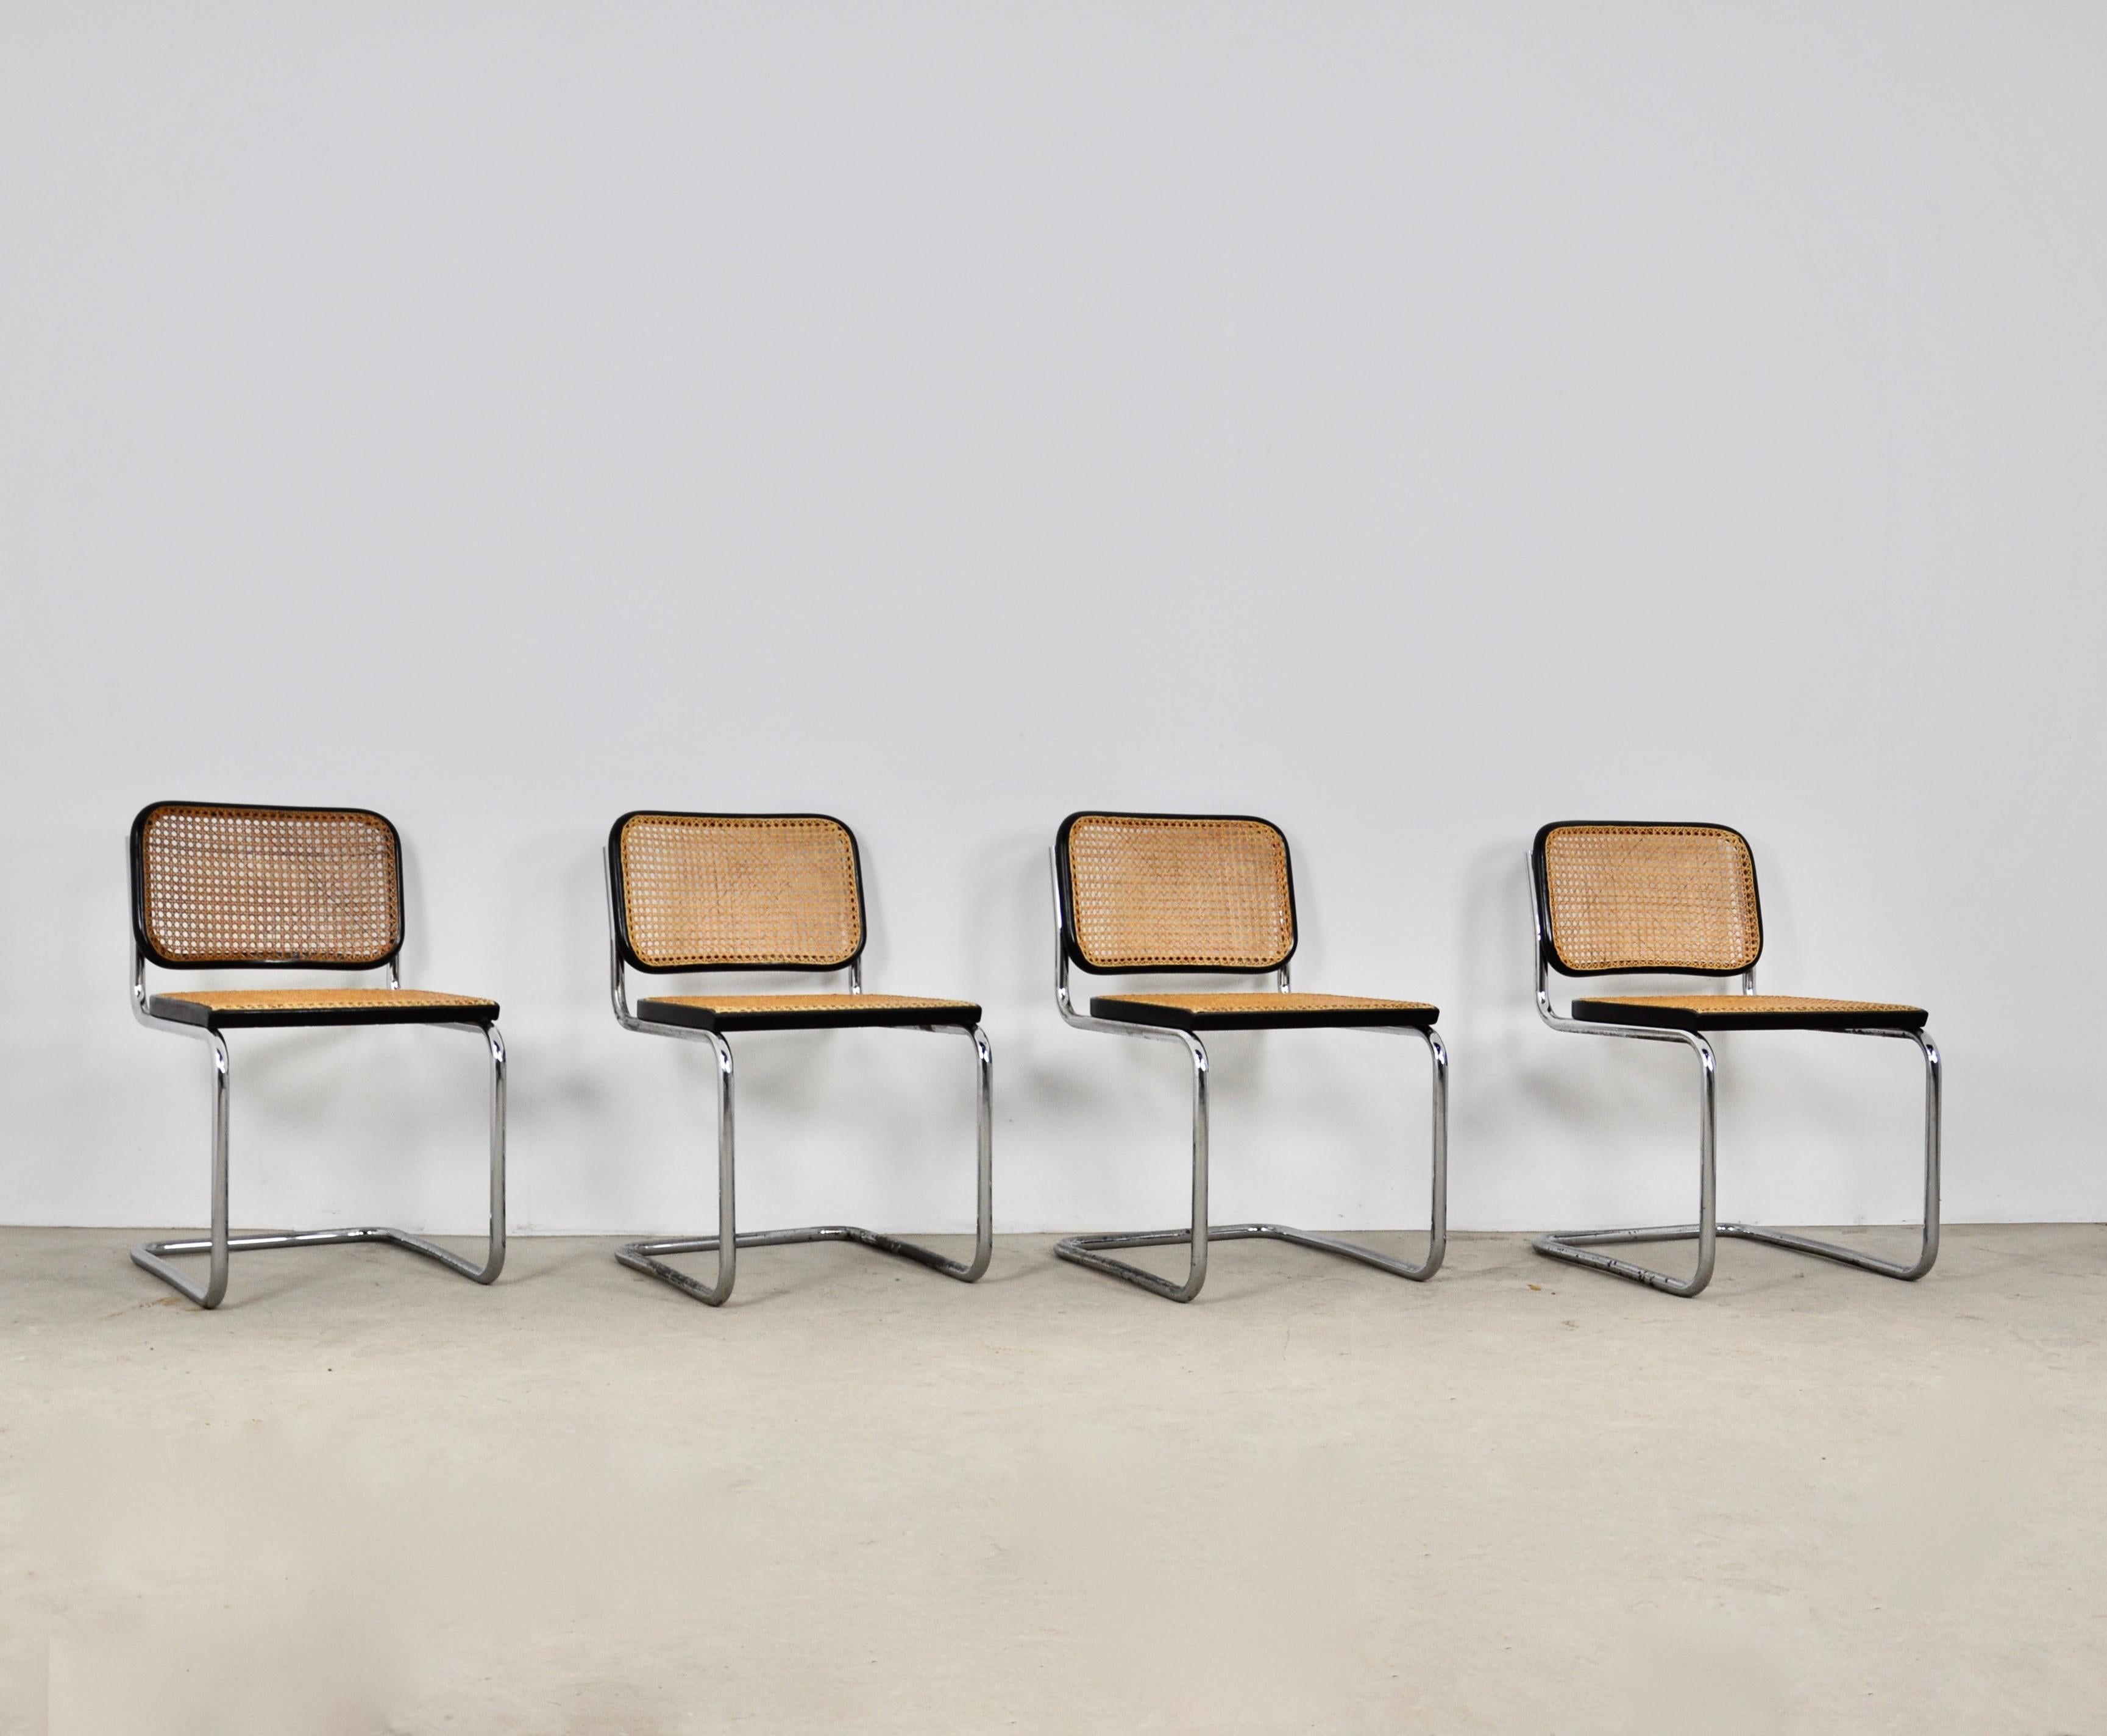 Serie de 4 chaises en metal, bois et cannages. usure sur les chromes ( voir photo) usure due au temps et l age des chaises. 
Hauteur assise 46 cm.